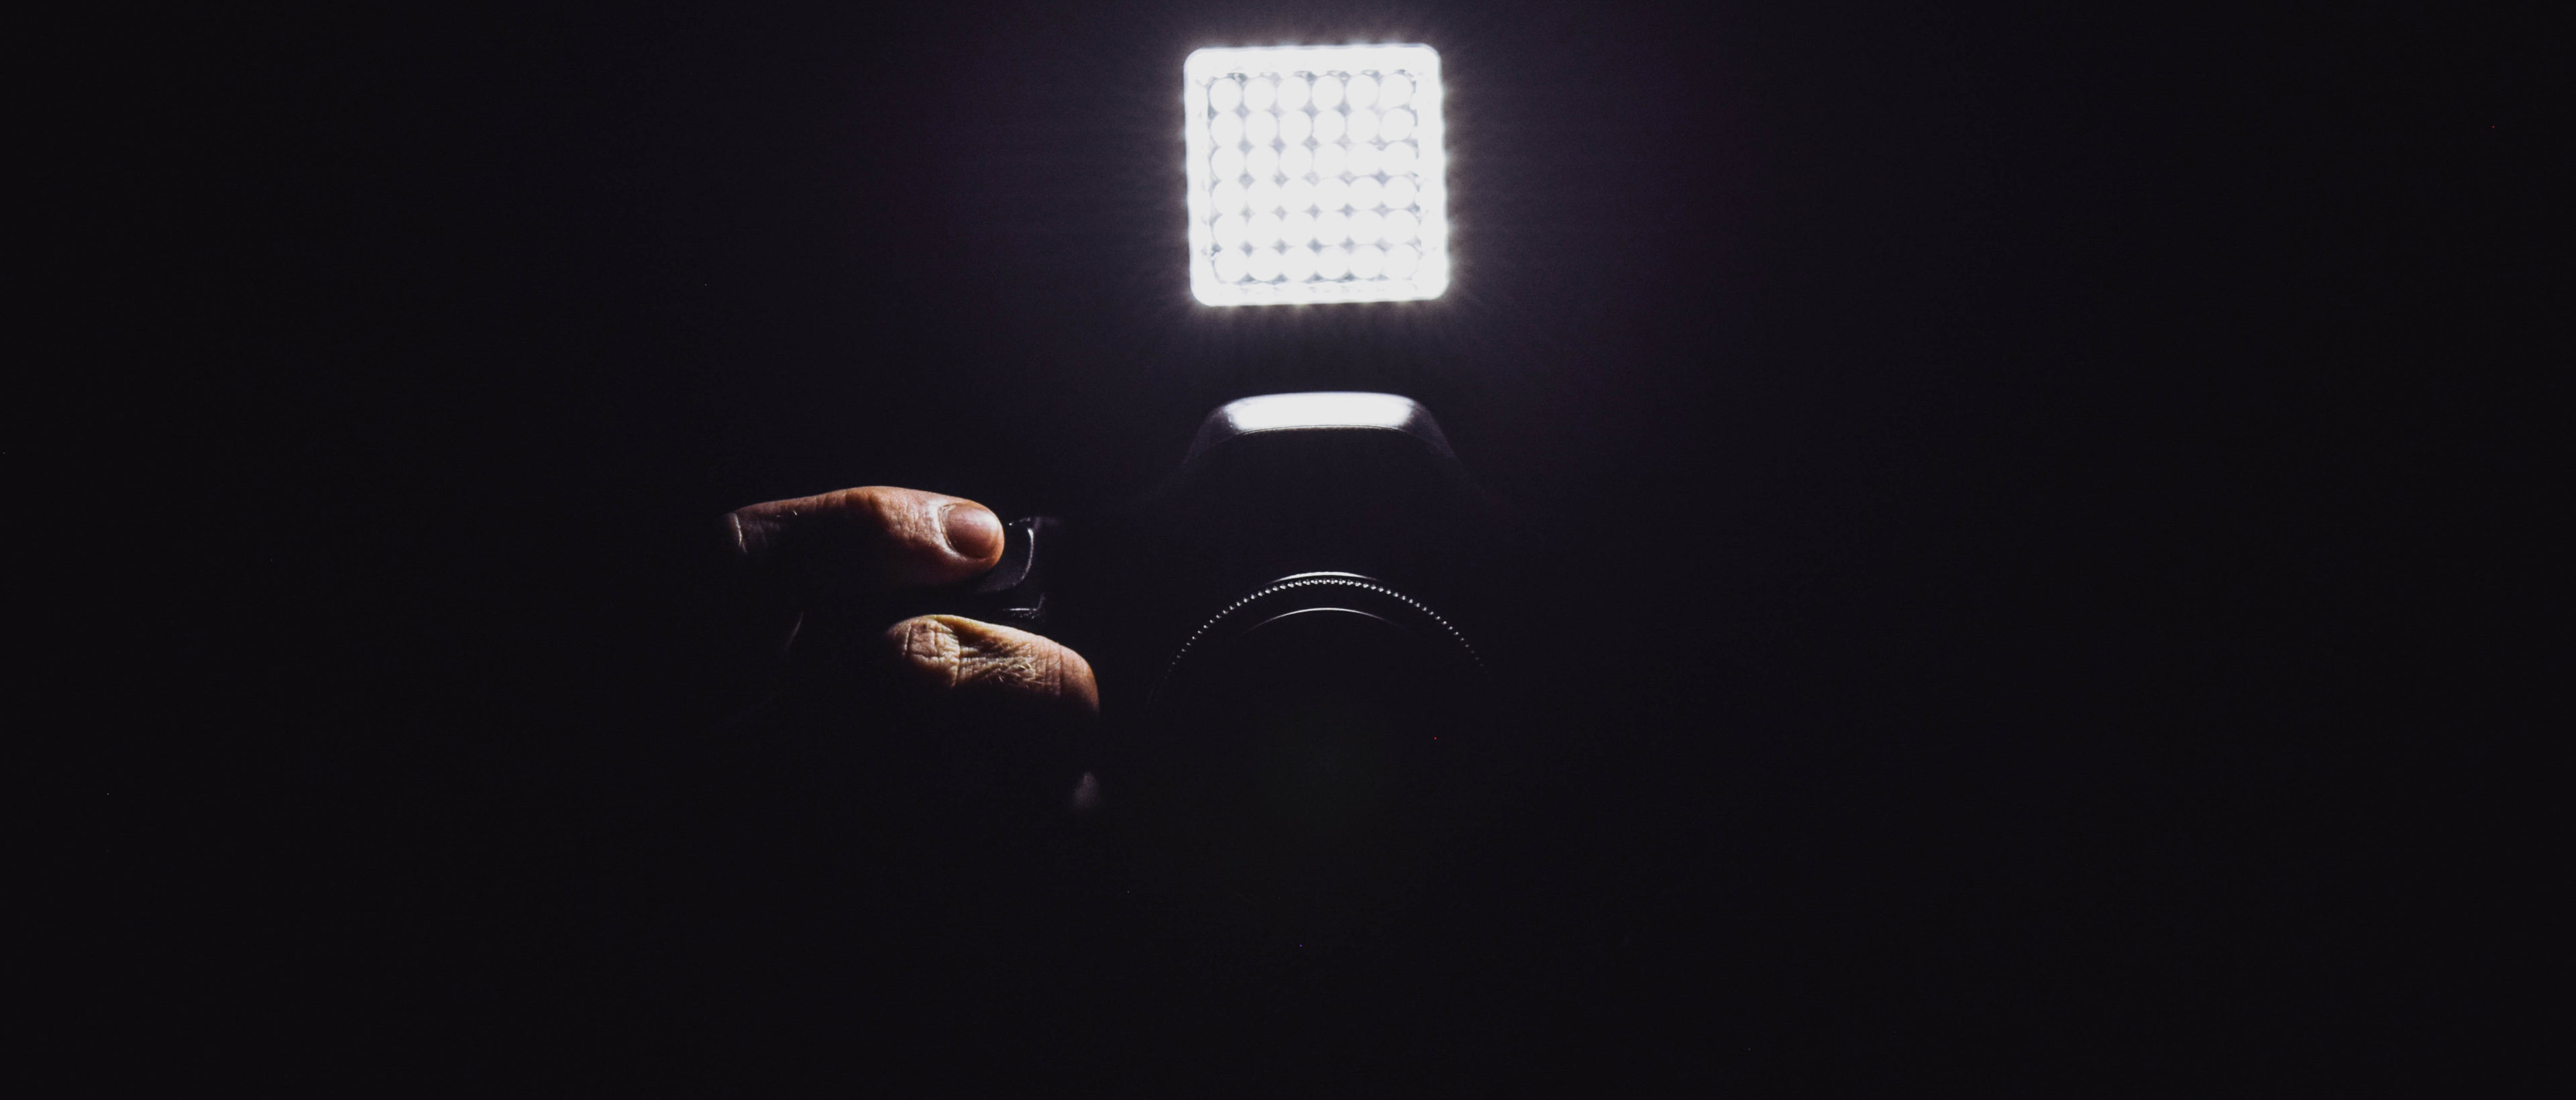 Preview Image: Mit LED-Kameraleuchten alles ins rechte Licht rücken